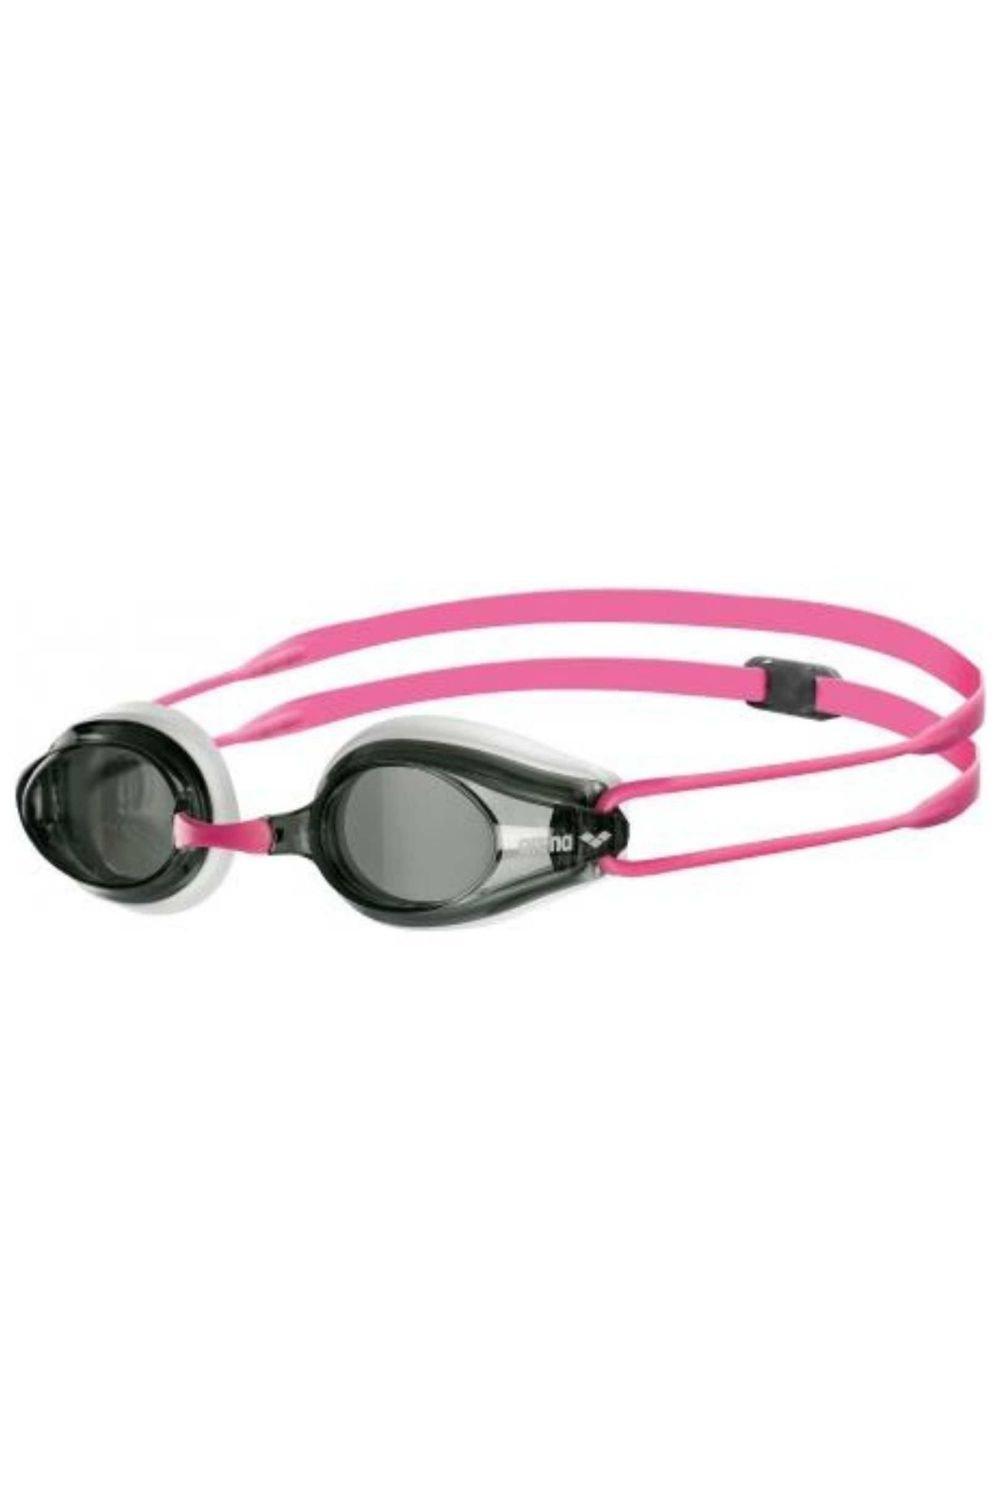 Очки для плавания Tracks - Дымчатая линза Arena, розовый очки для плавания arena tracks розовые